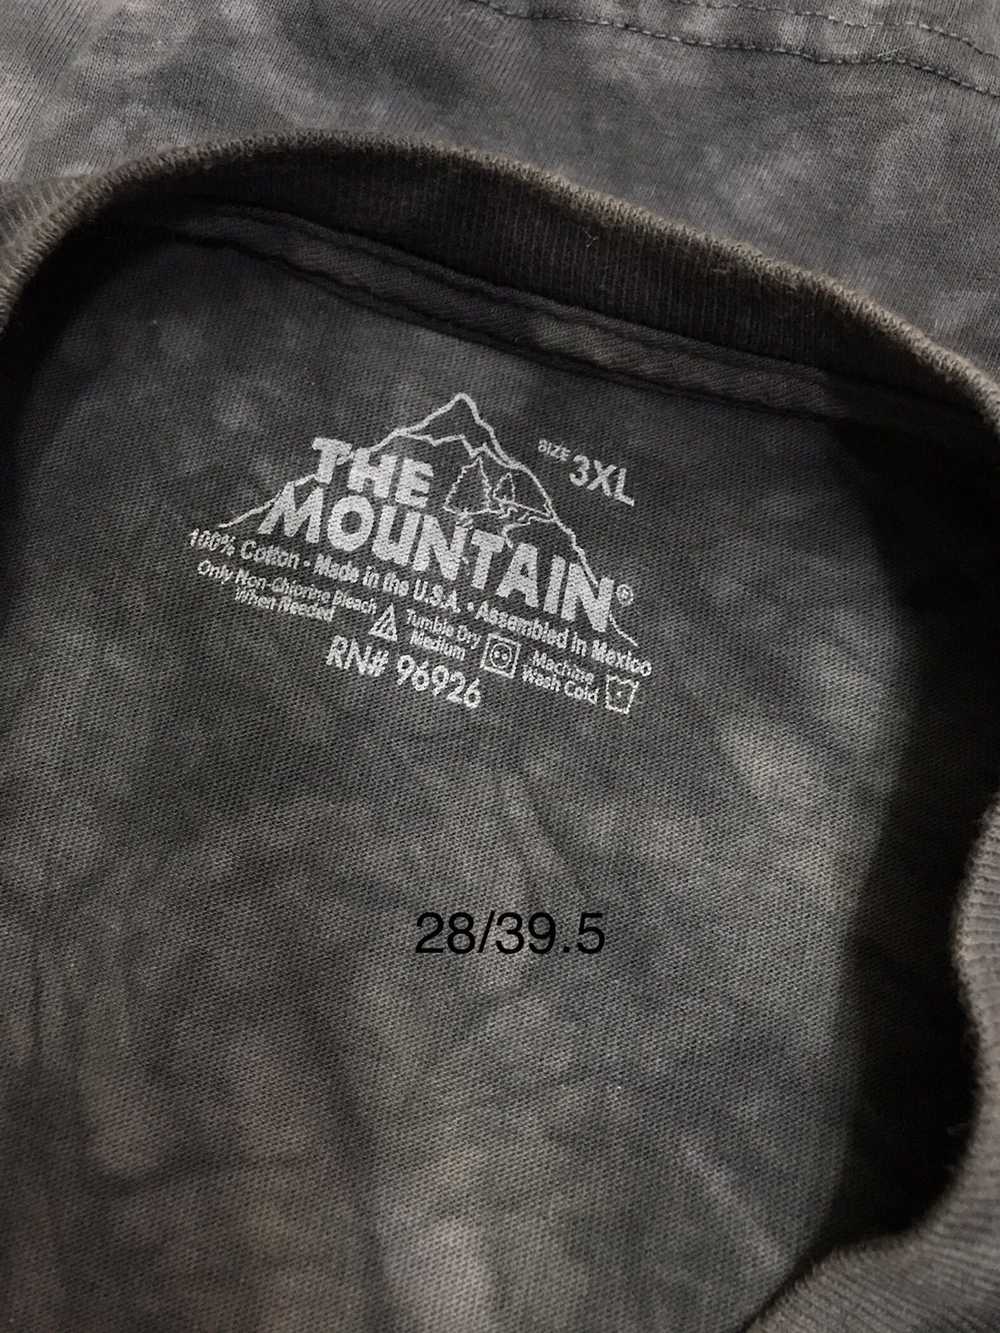 Animal Tee × Other × The Mountain TM the mountain… - image 3